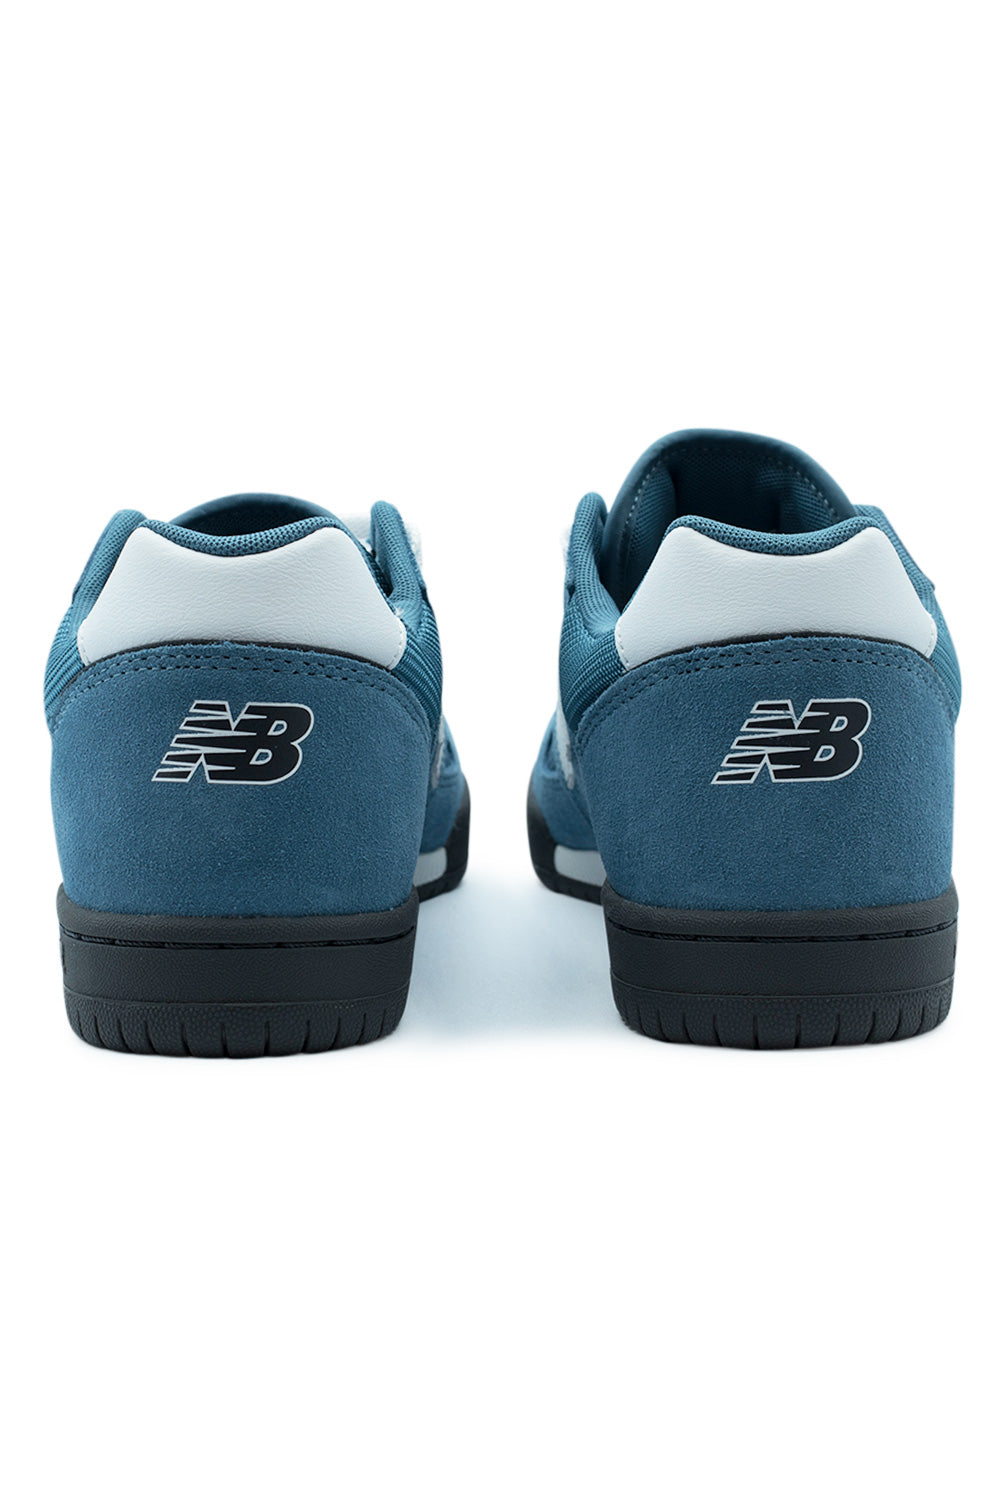 New Balance Numeric Tom Knox 600 Shoe Elemental Blue / White - BONKERS